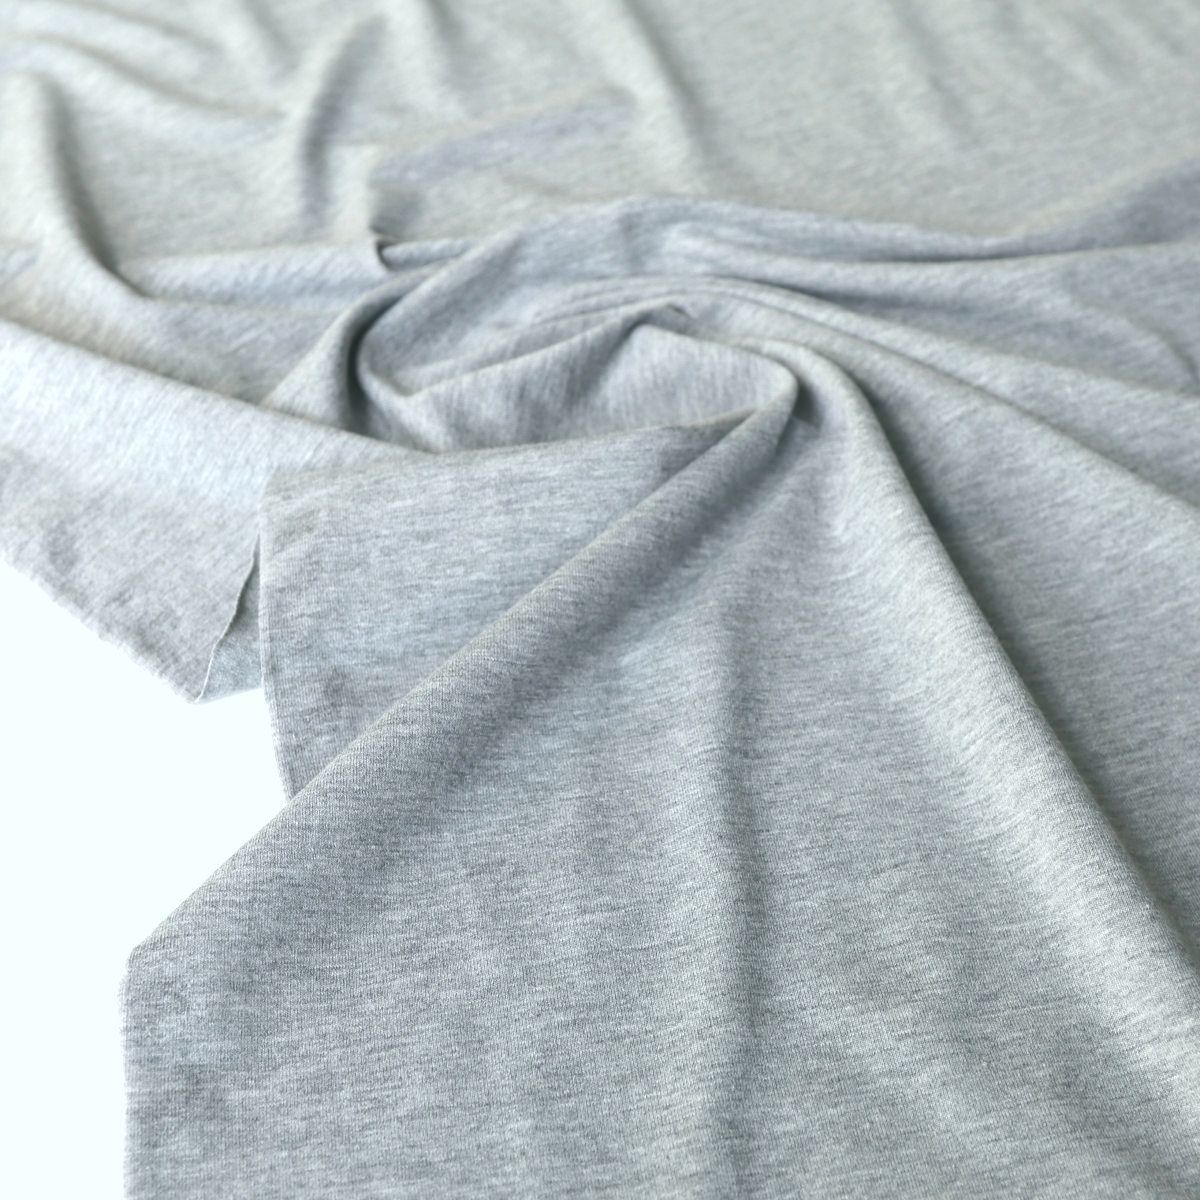 Shirt u Kleider Jersey Stoff in Grau Meliert elastischer Baumwollstoff Meterware